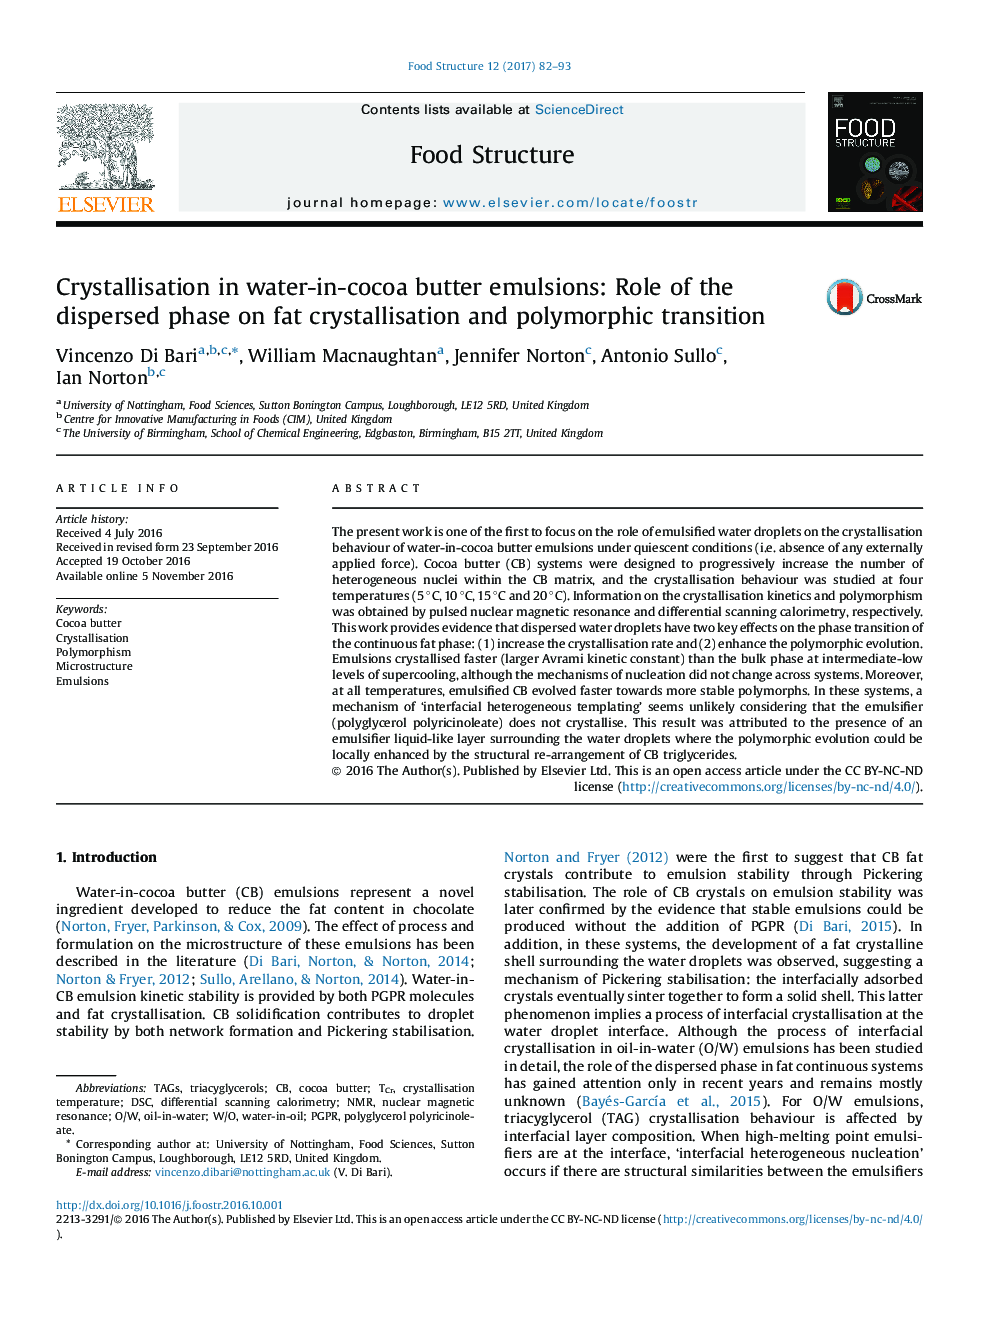 کریستالیزاسیون در امولسیون کره آب-در-کاکائو: نقش فاز پراکنده بر روی بلور سازی چربی و انتقال پلی مورفیک